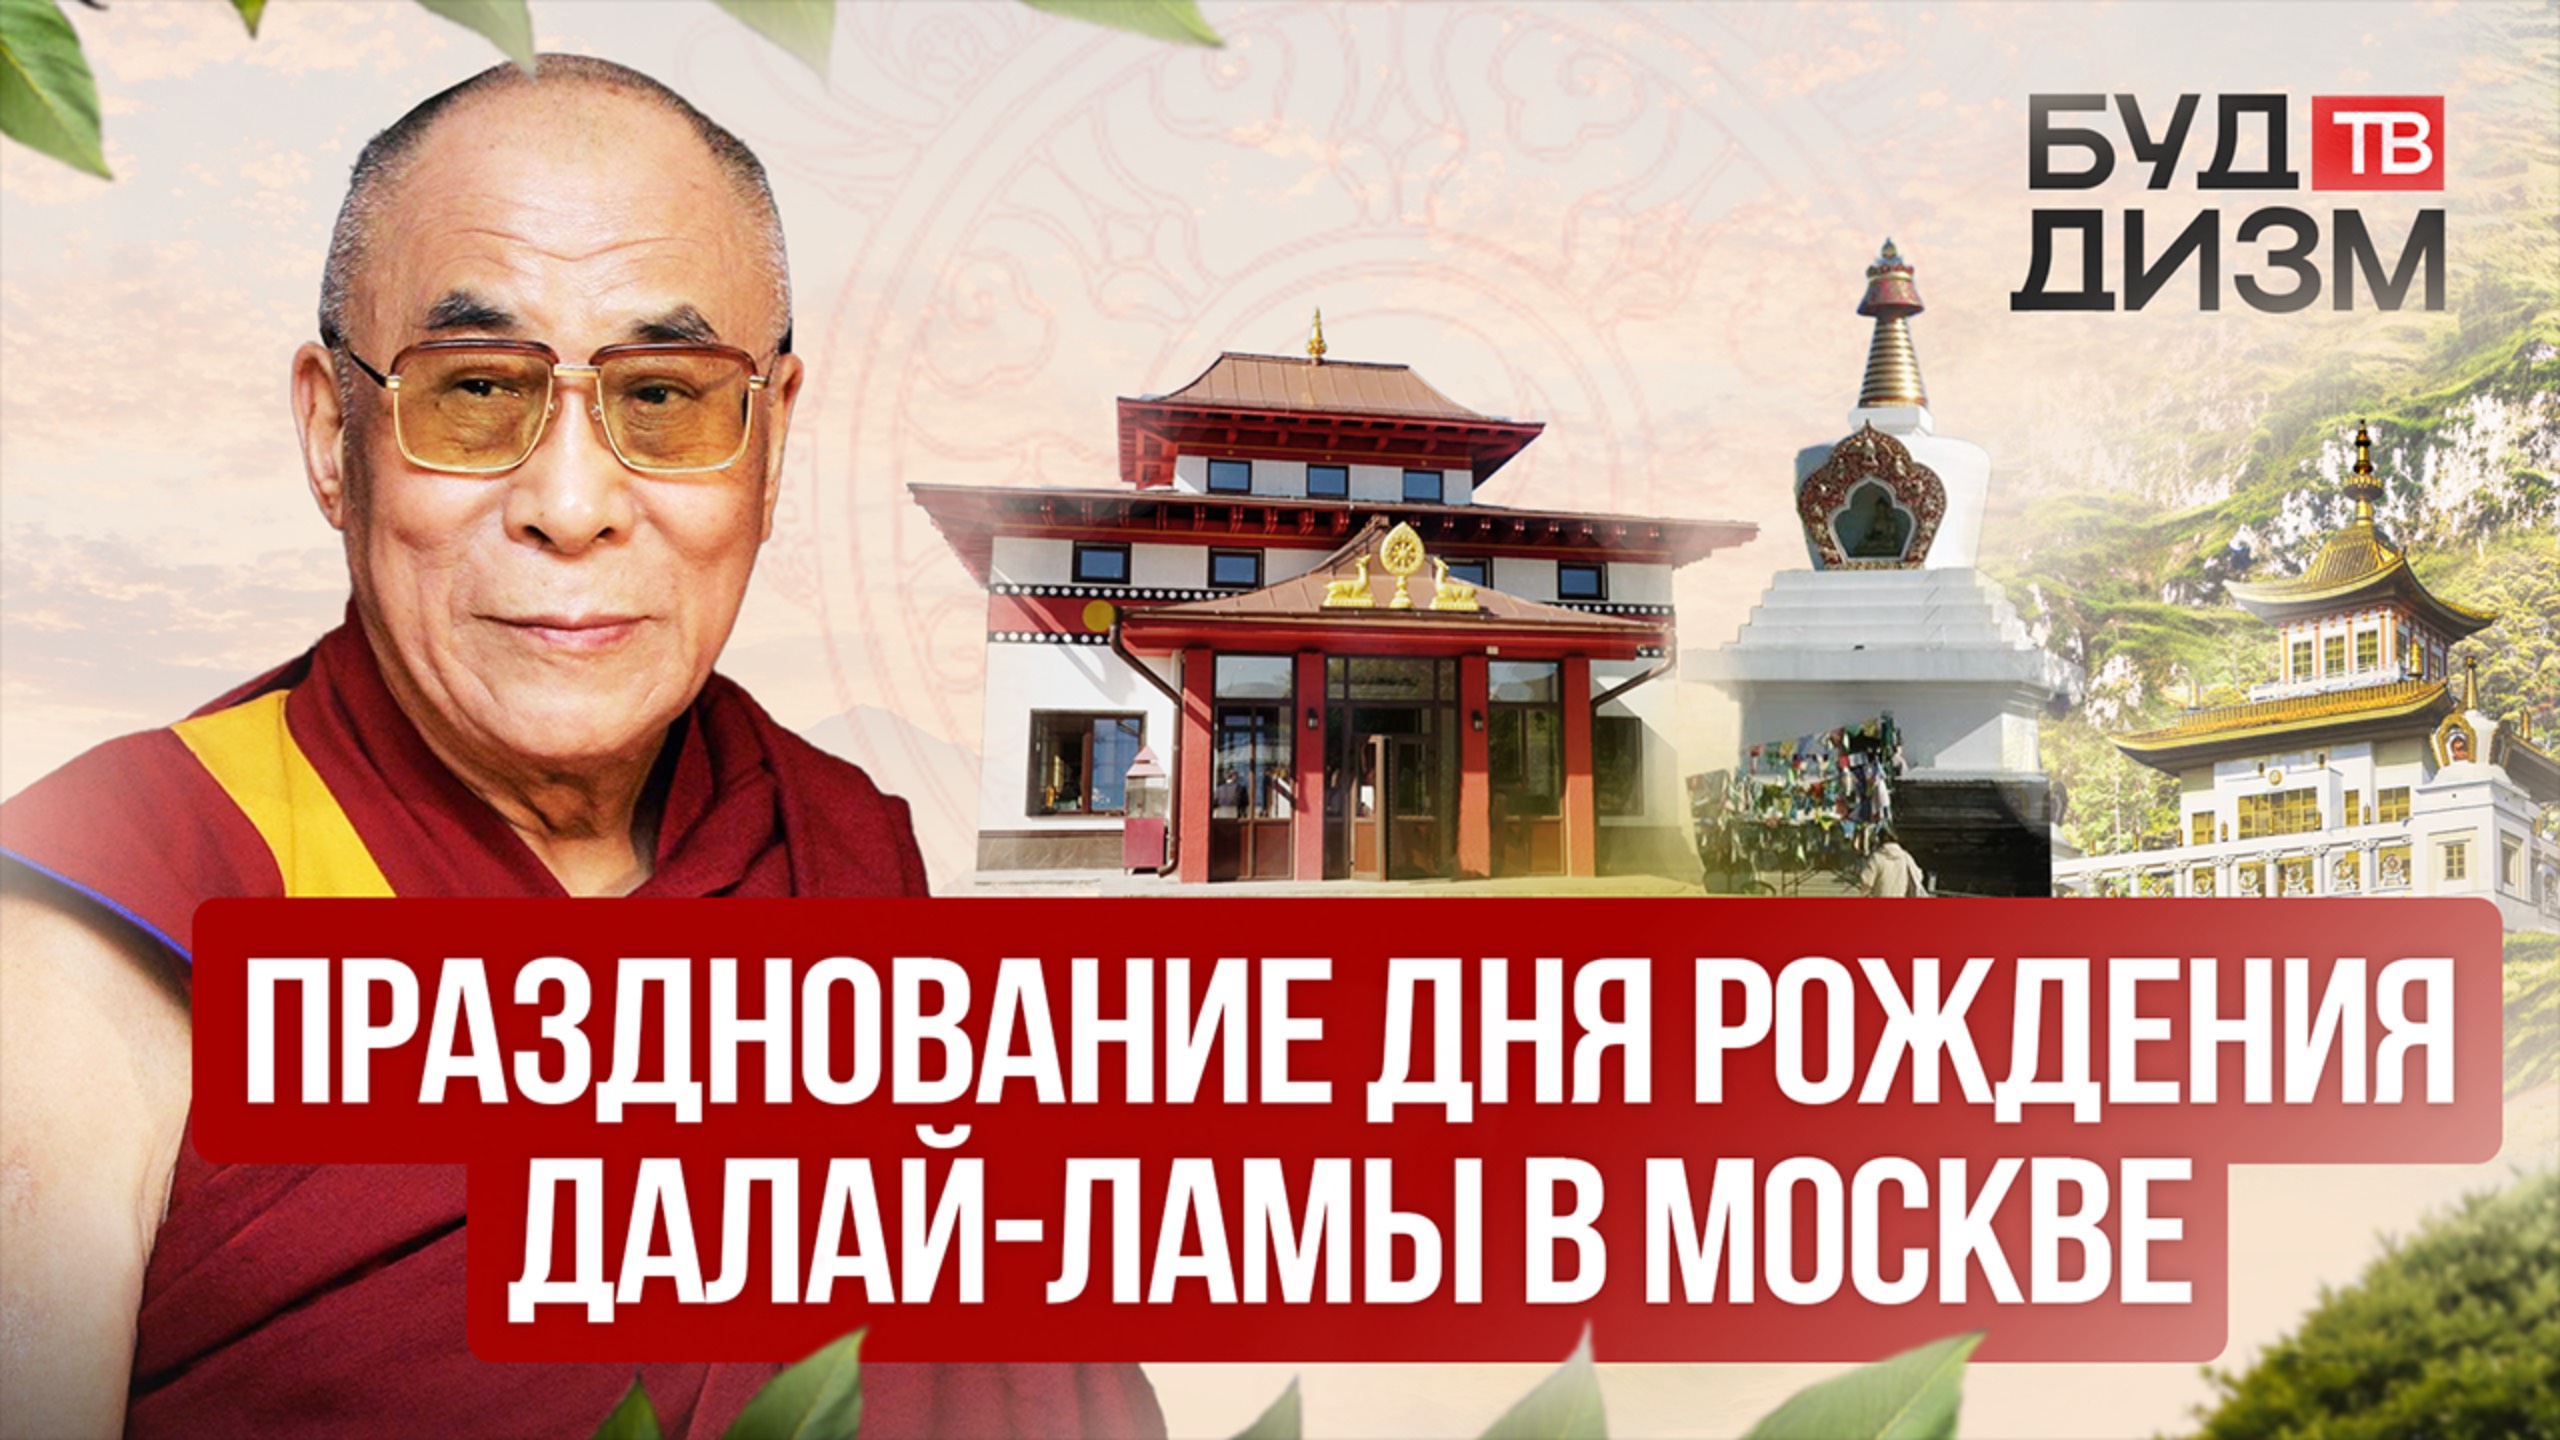 Выпуск 12 — Празднование Дня рождения Далай-ламы в Москве.